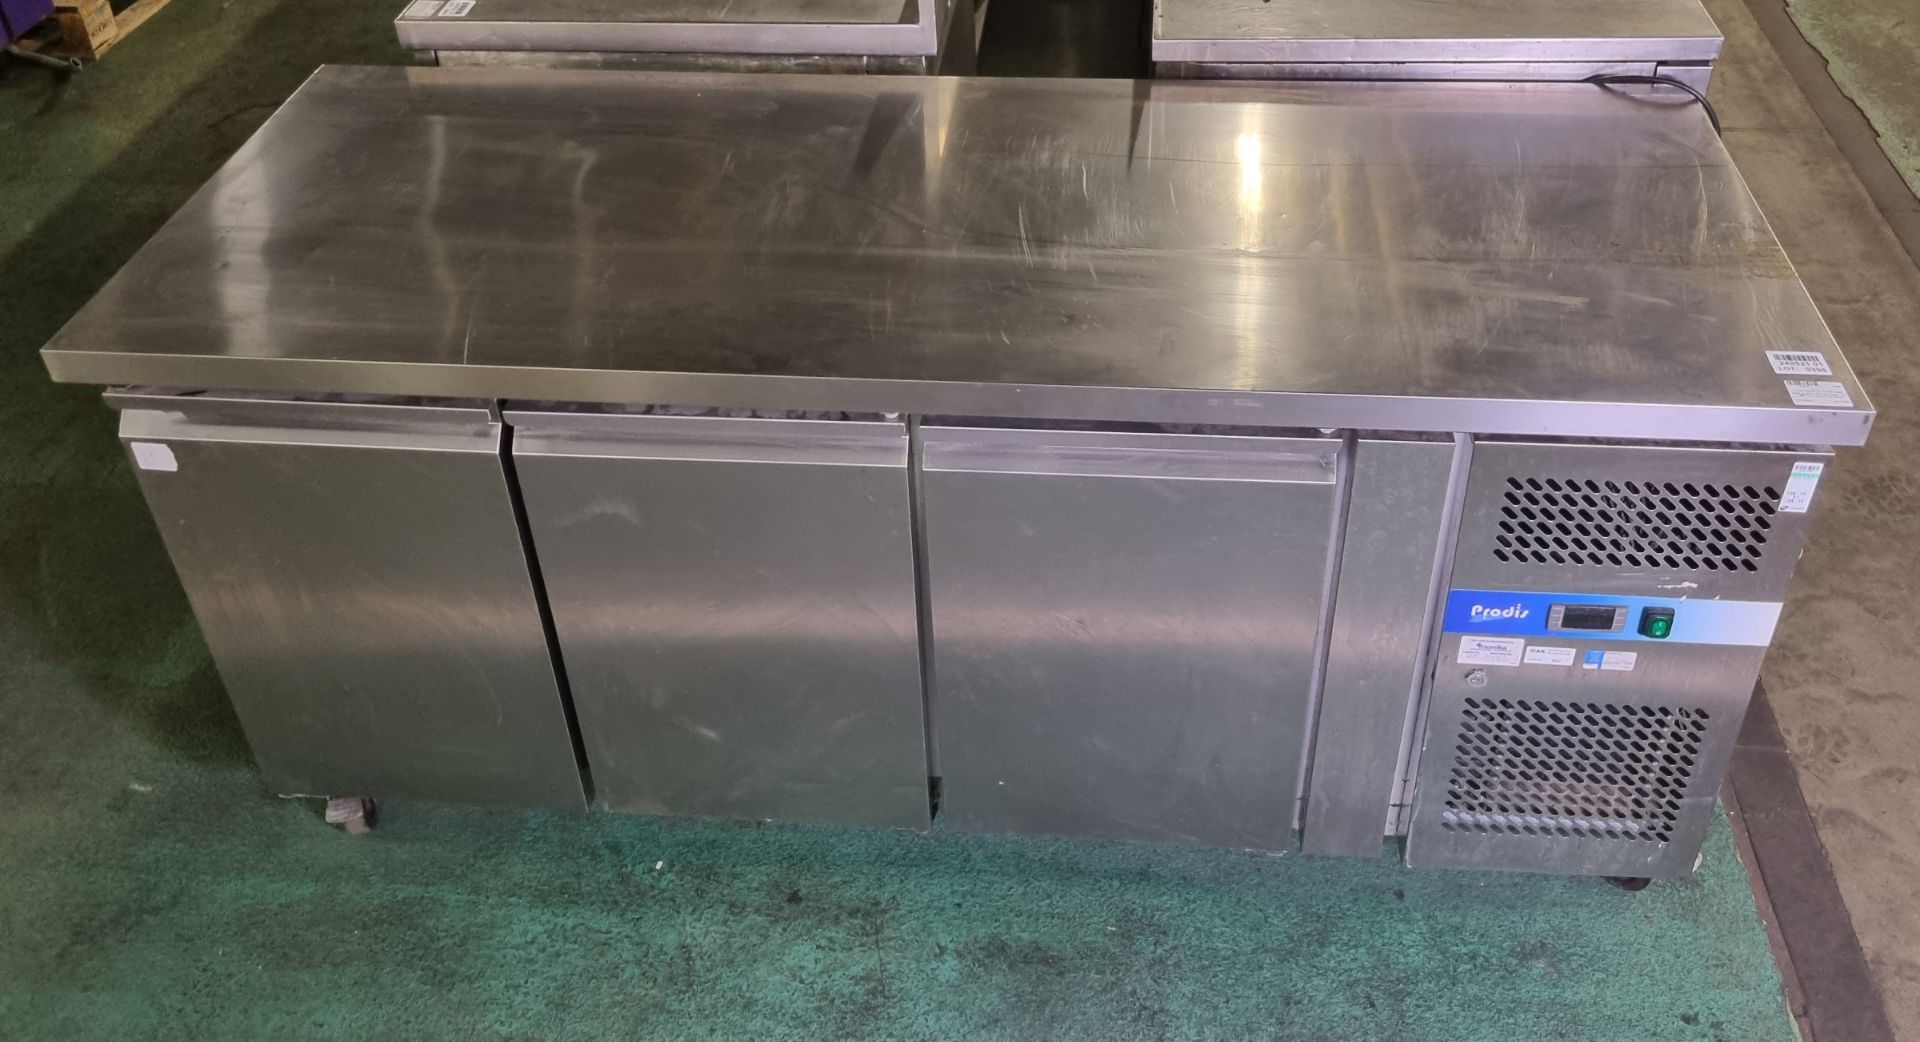 Prodis GN3100TN stainless steel 3 door counter fridge - W 1800 x D 700 x H 830mm - Bild 2 aus 6